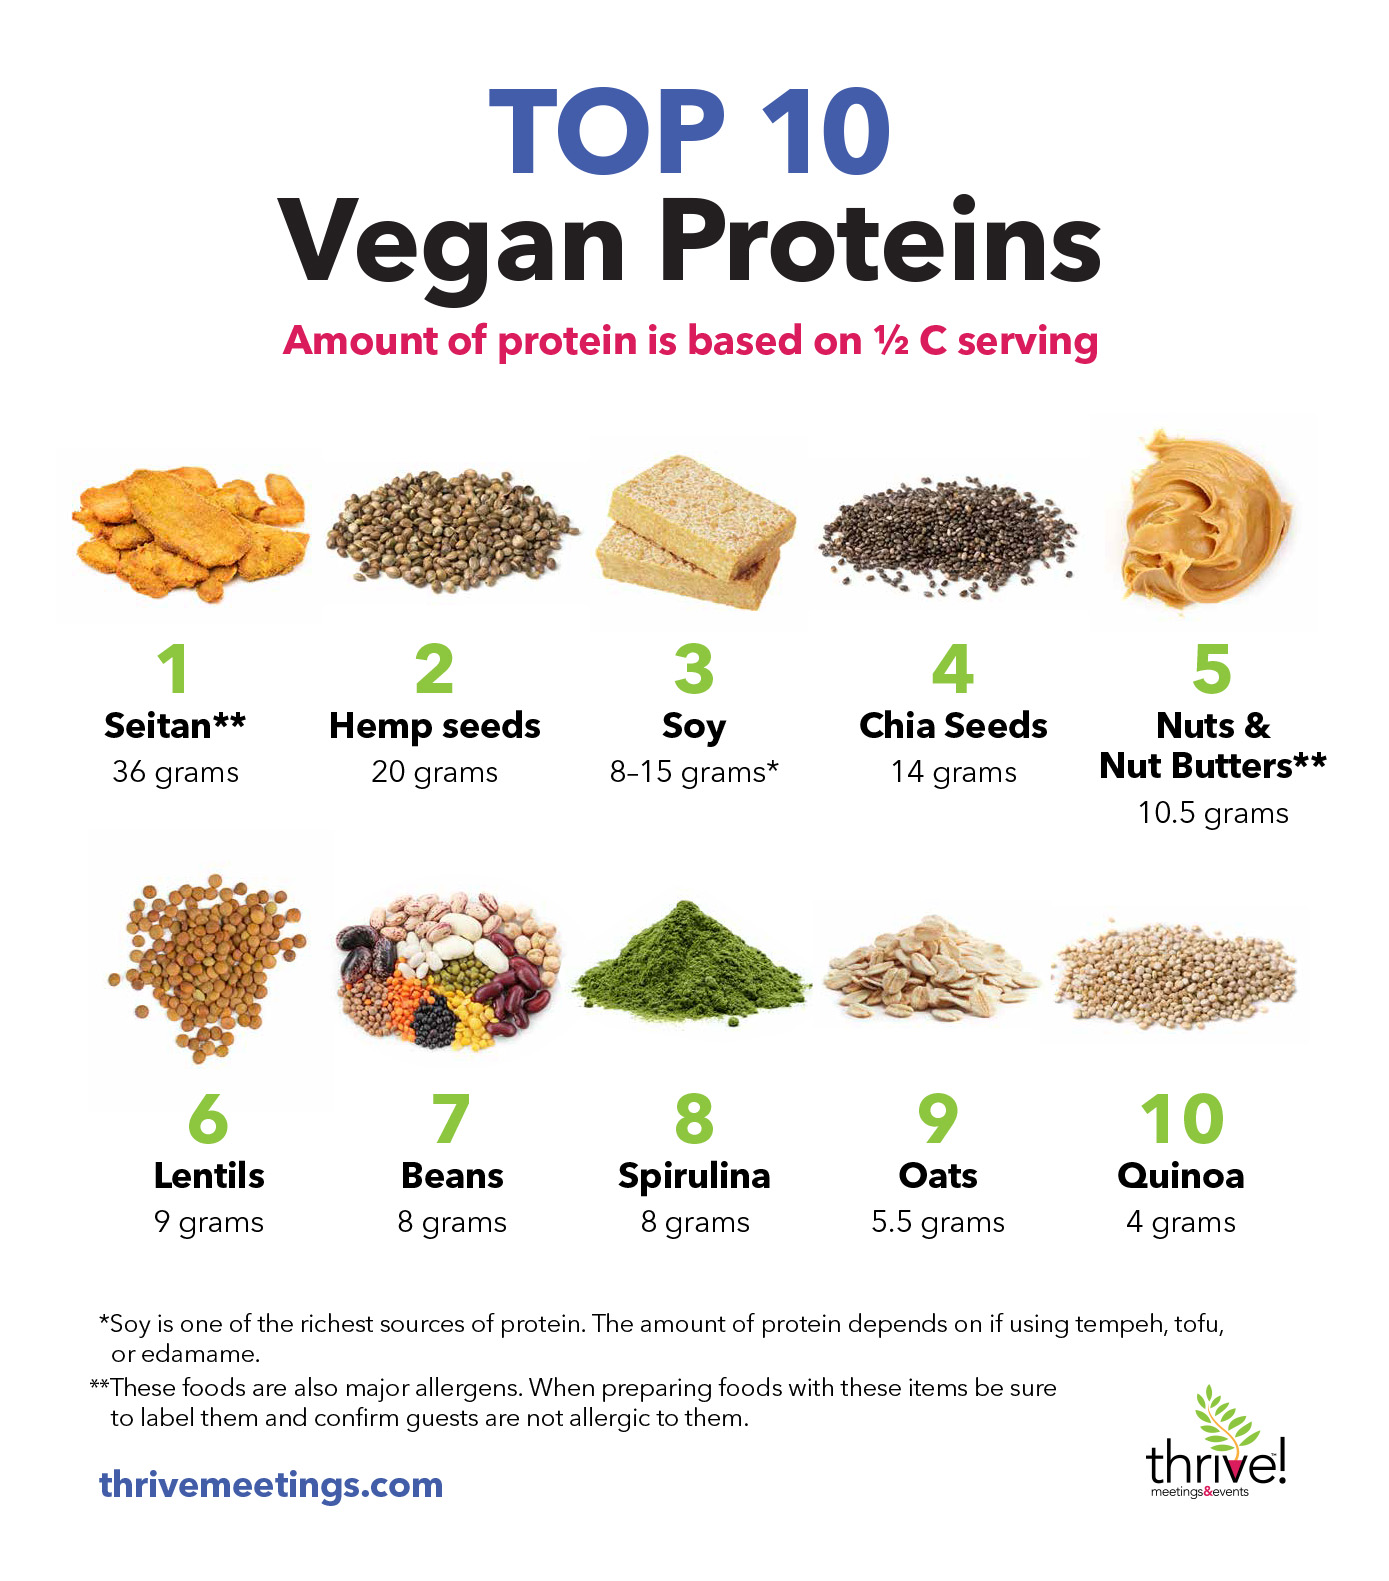 Top 10 Vegan Proteins